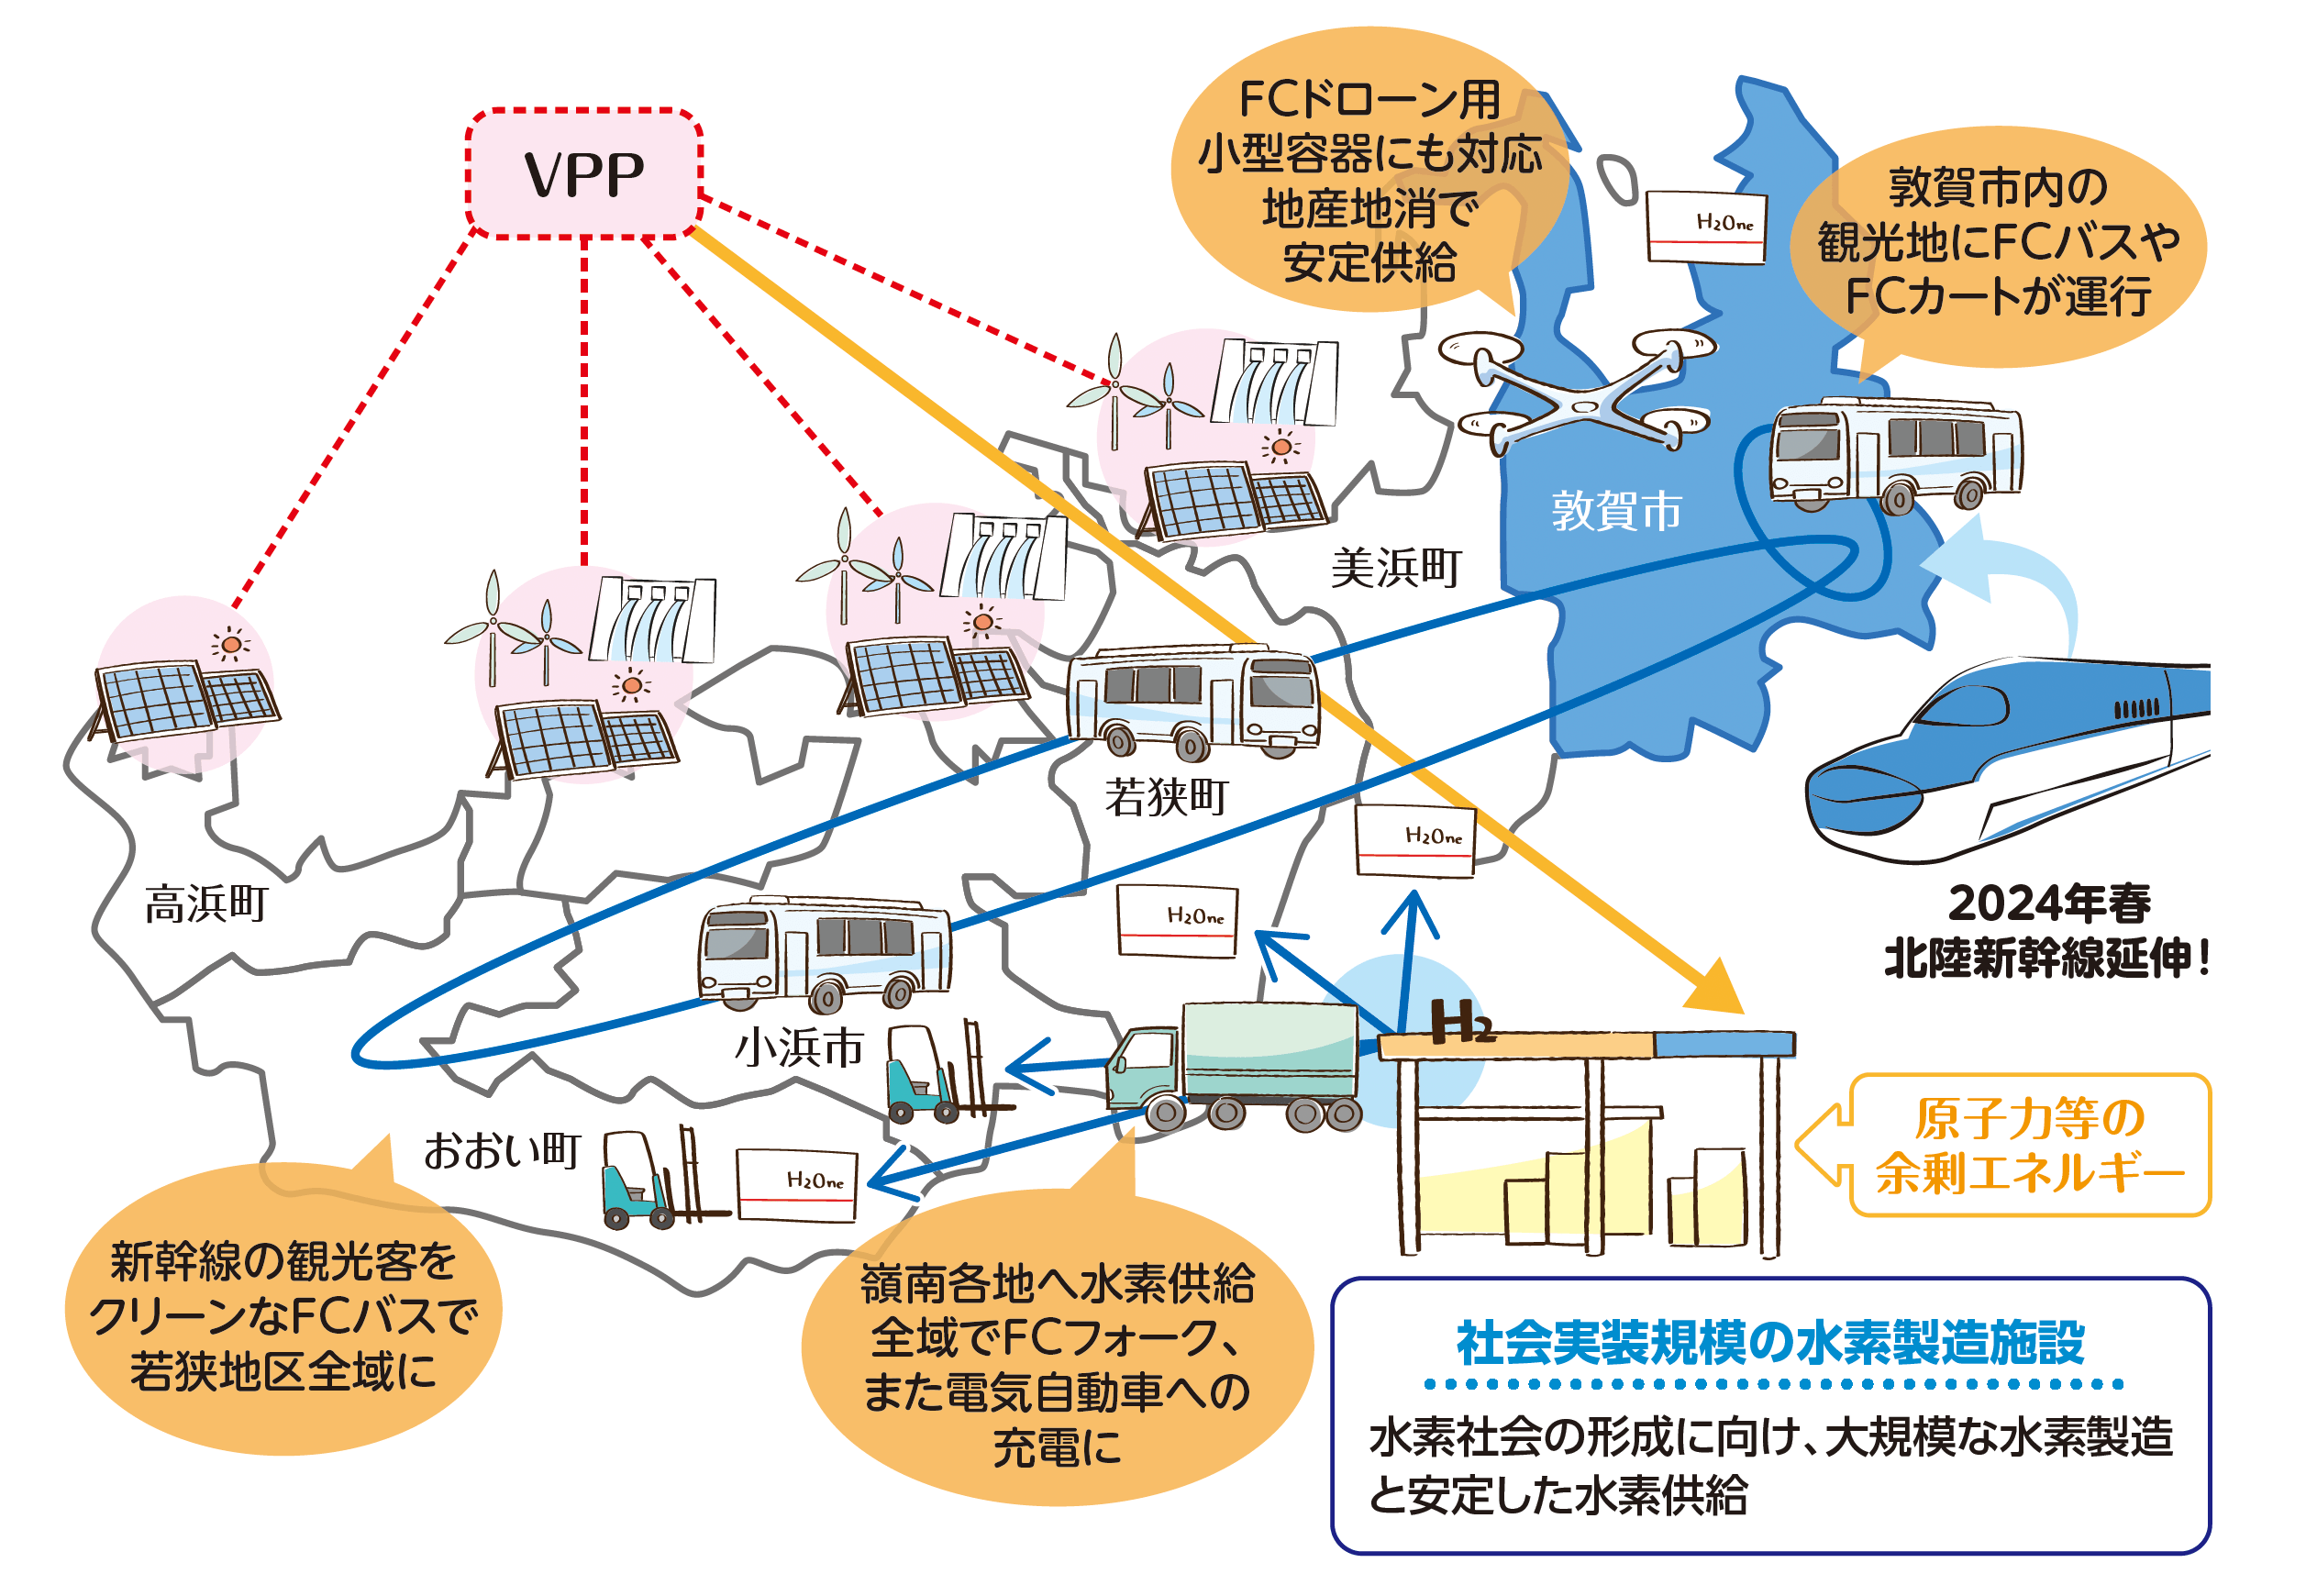 嶺南（福井県南部）地域でのエネルギー地産地消の将来イメージ